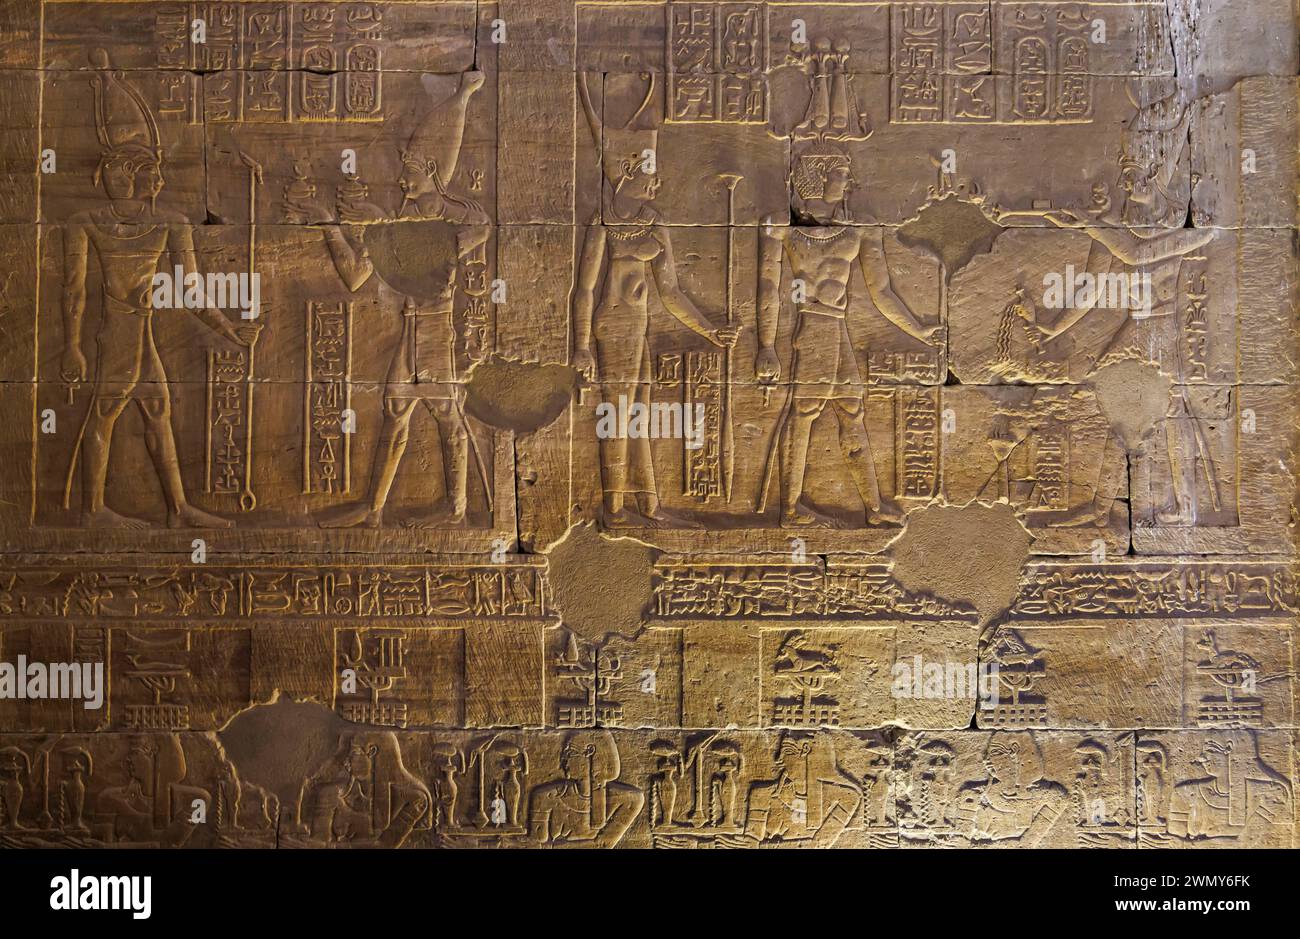 Egitto, Assuan, monumenti nubiani da Abu Simbel a file, patrimonio dell'umanità dell'UNESCO, tempio di Kalabsha, bassorilievo sul muro Foto Stock